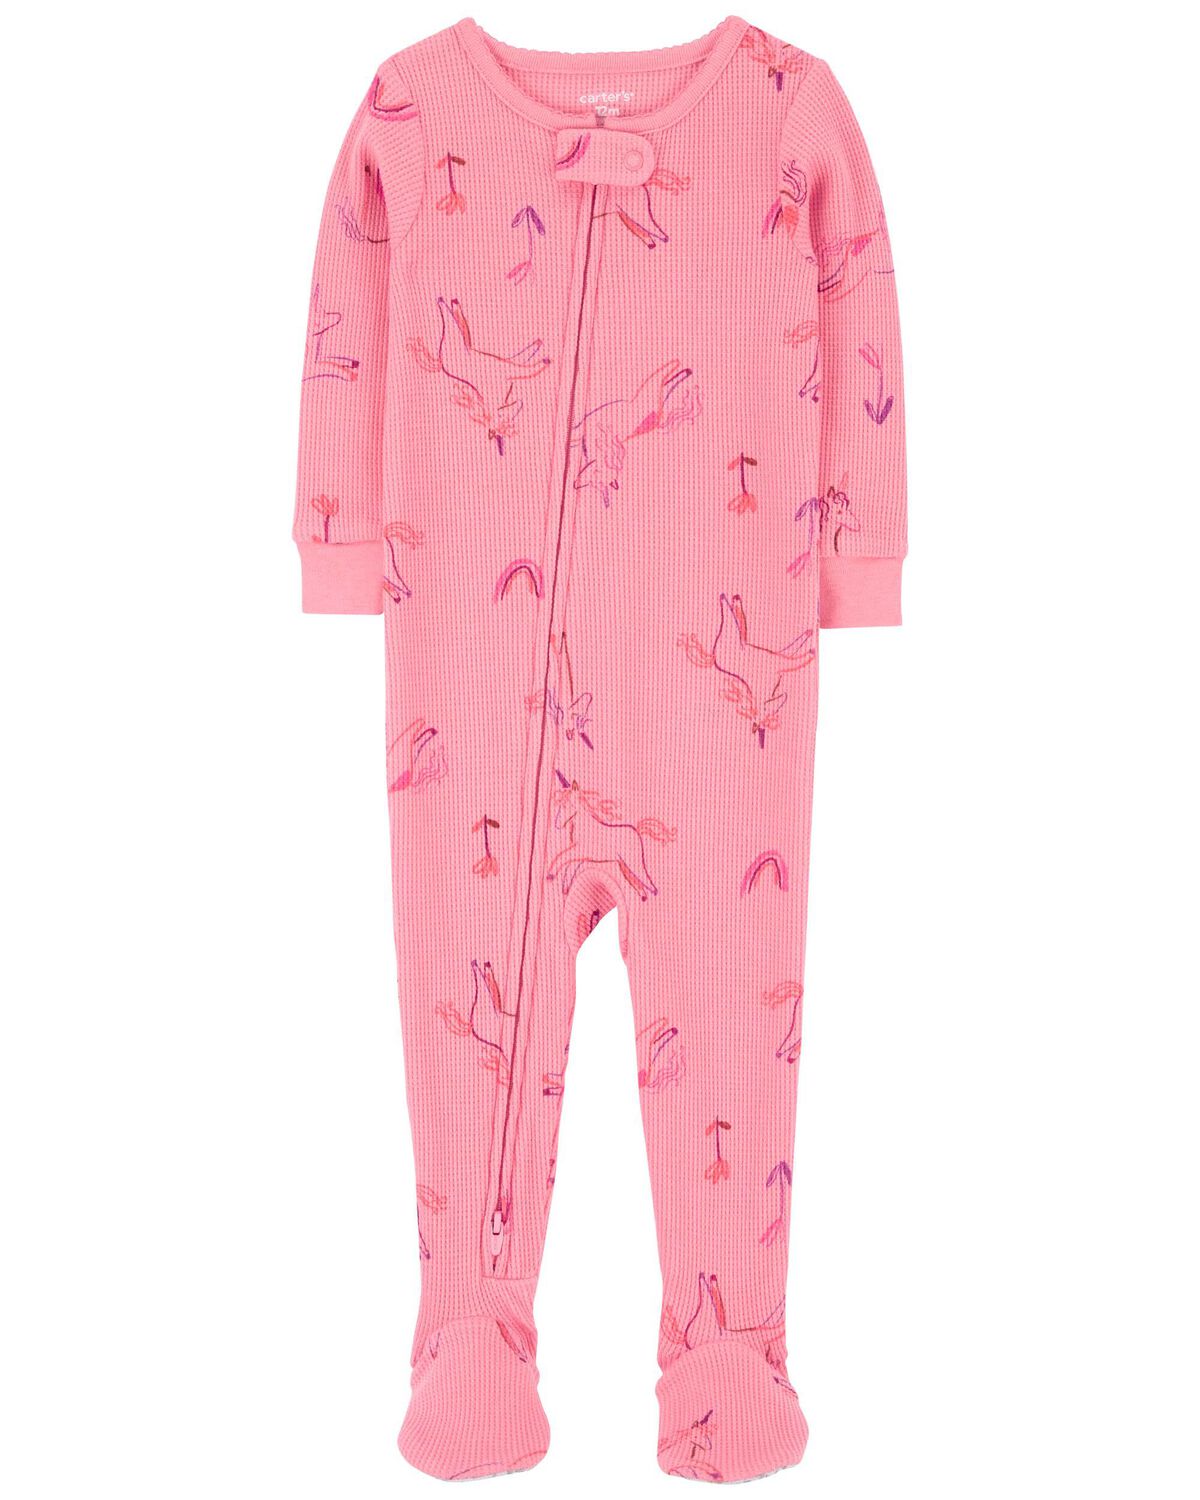 Toddler 1-Piece Unicorn Thermal Footie Pajamas